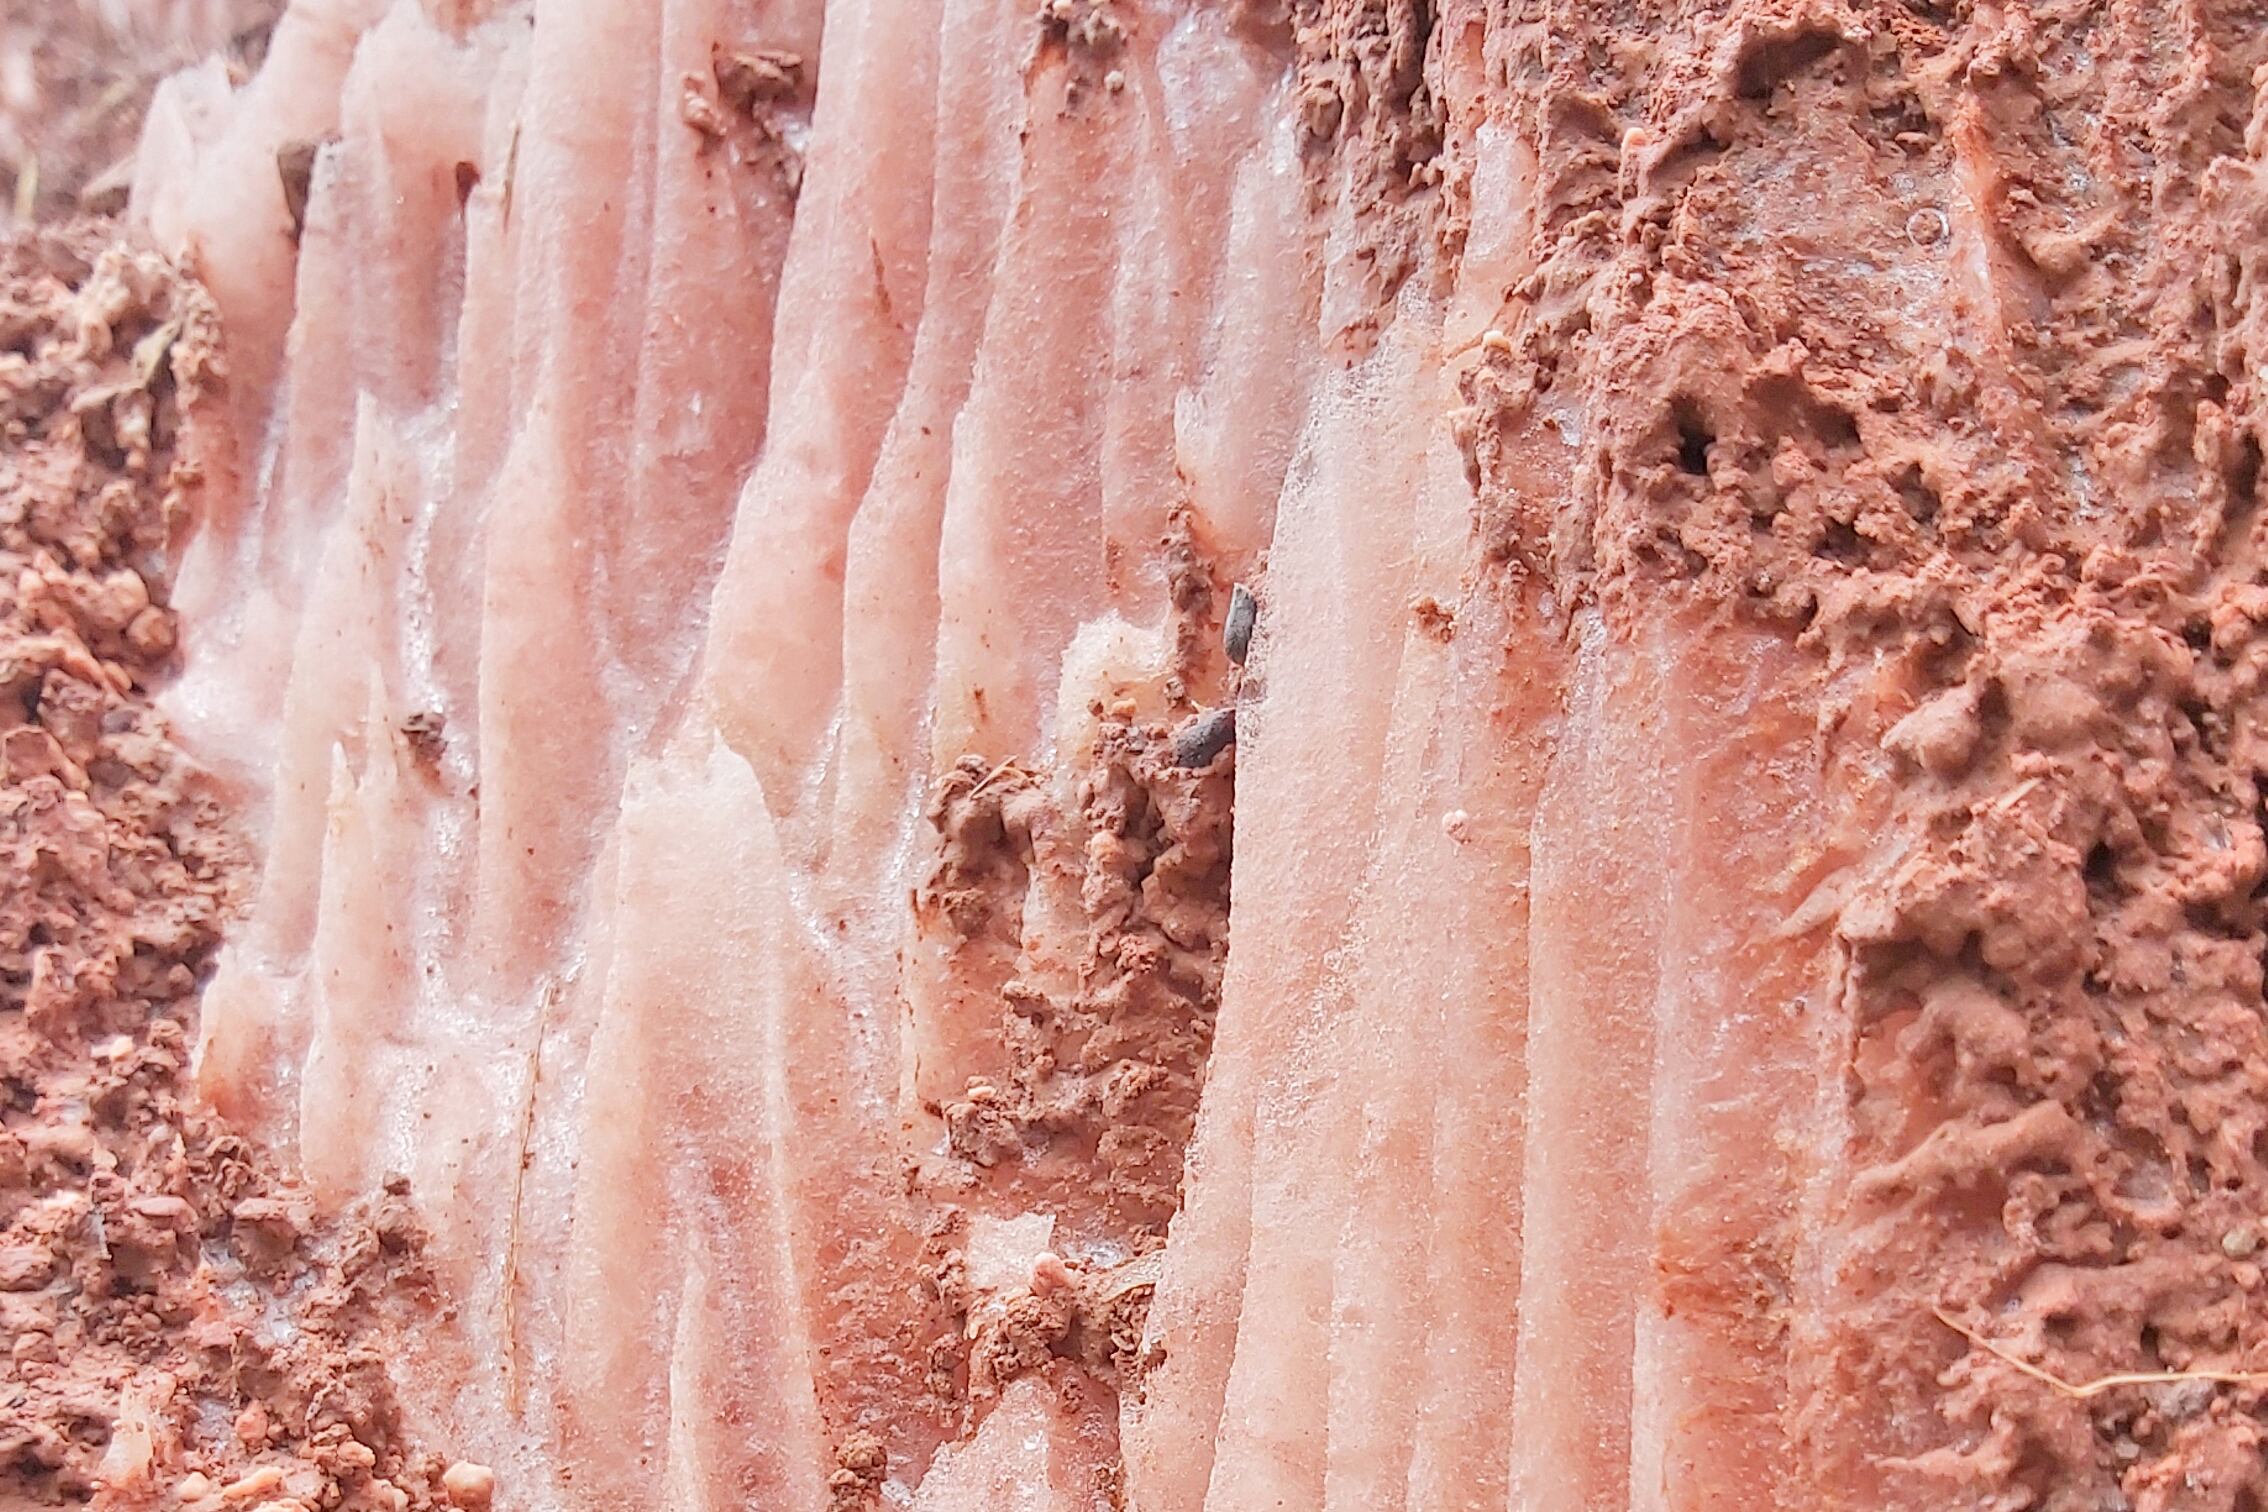 Las minas de sal rosada de Pilluana, situadas en la cuenca del río Huallaga, son explotadas por nativos locales que preservan técnicas ancestrales de extracción.
Foto: Gloocal